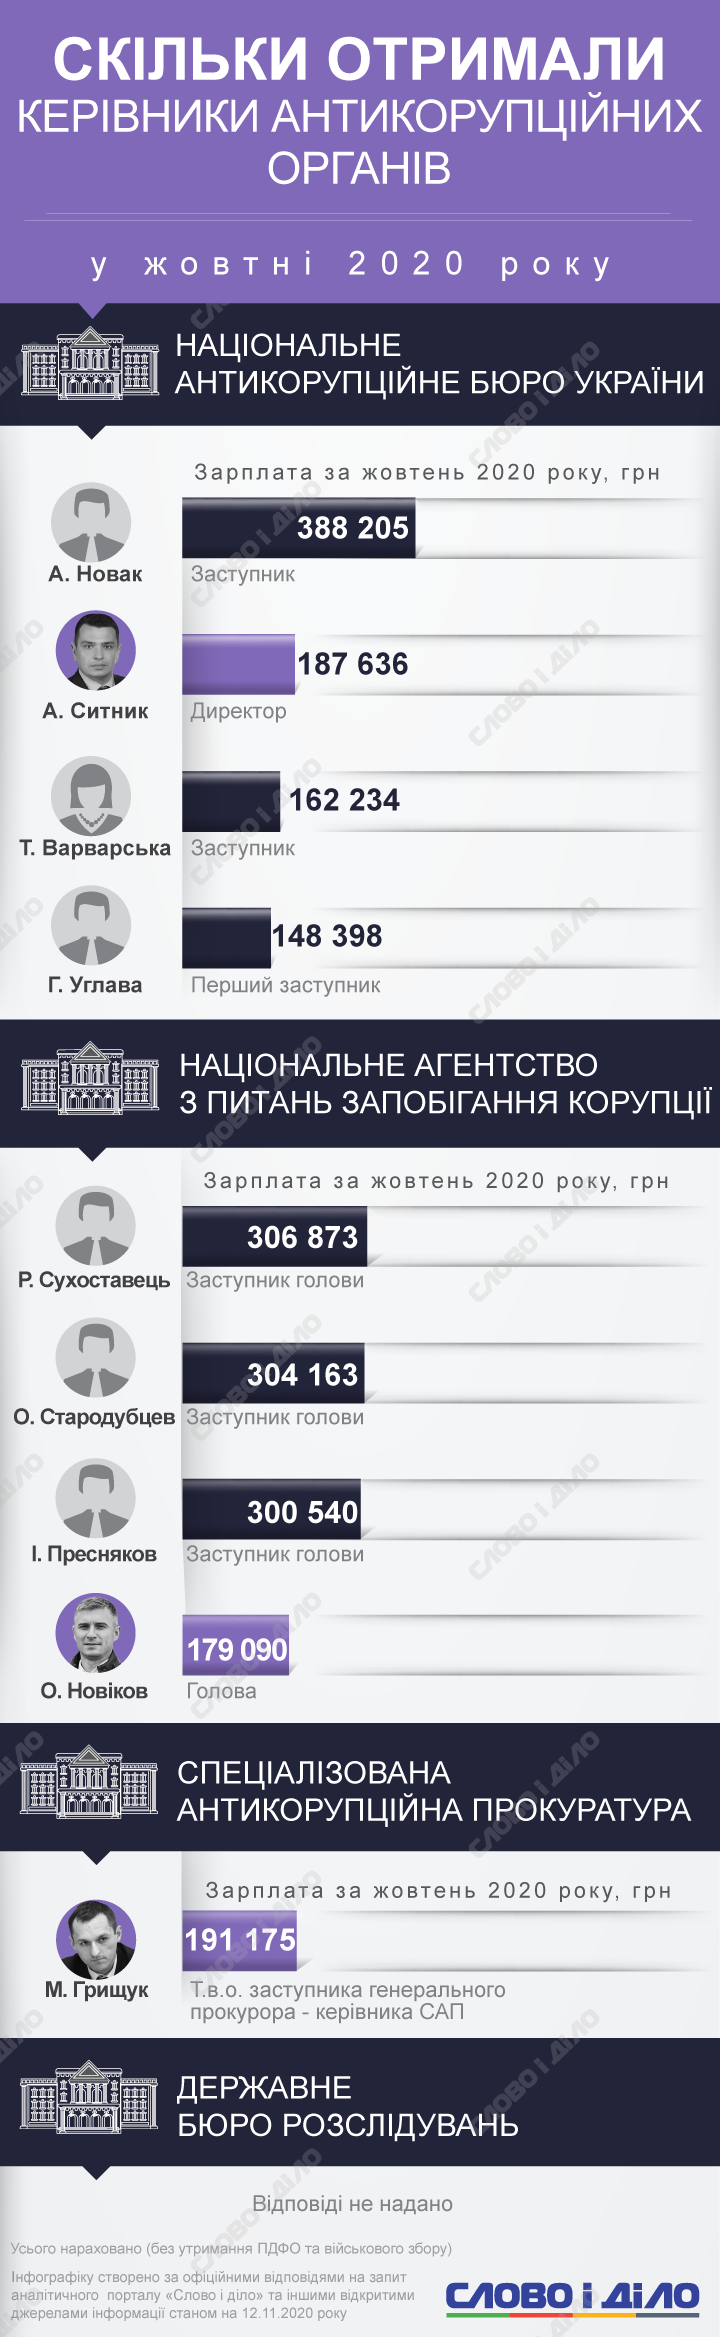 Руководители антикоррупционных органов в октябре заработали от 150 до почти 400 тысяч гривен.